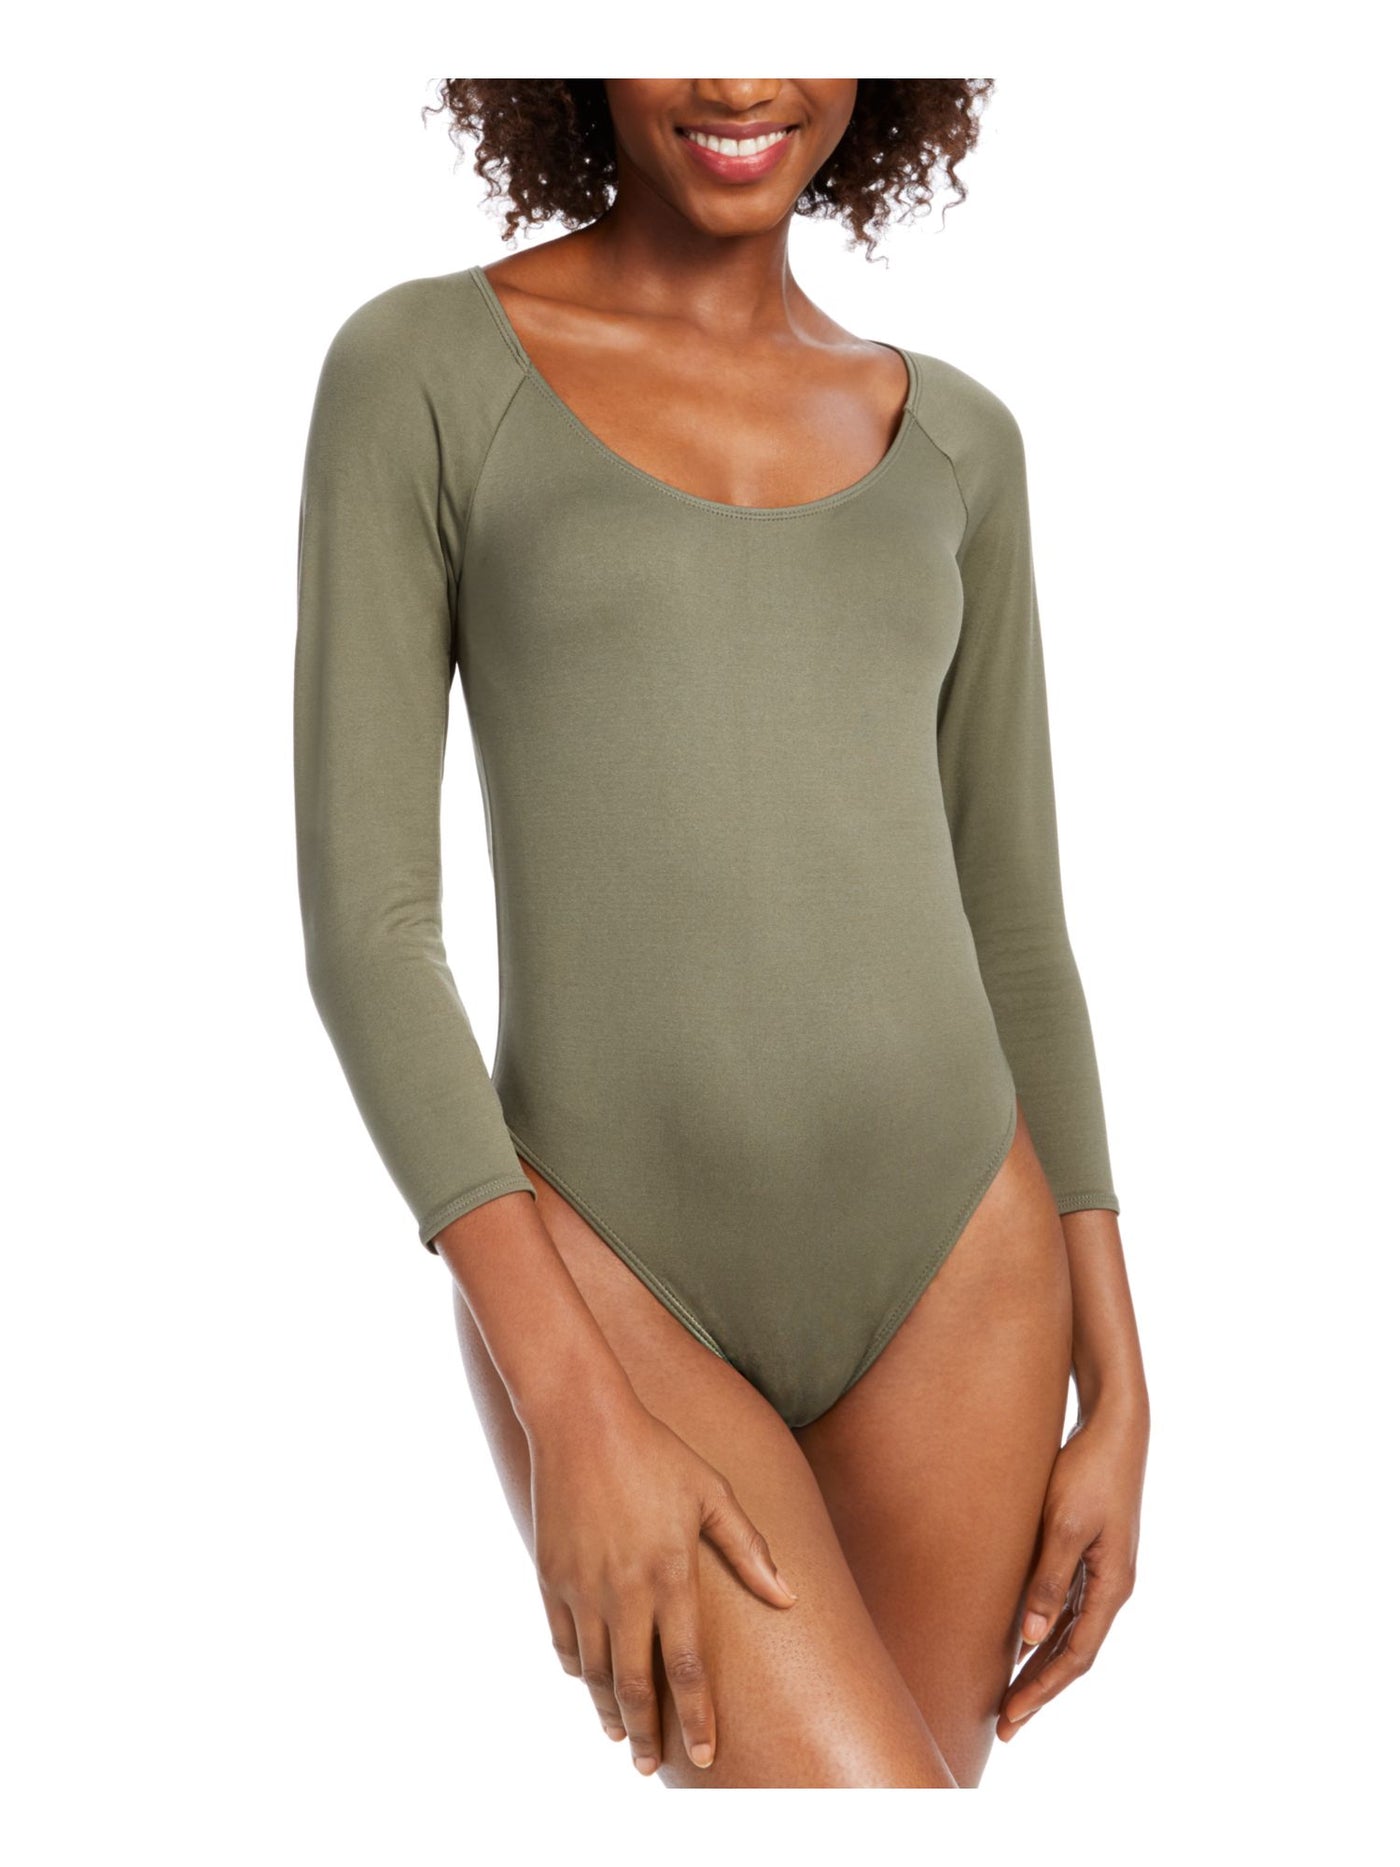 BAR III Womens Green 3/4 Sleeve Scoop Neck Body Suit Top M